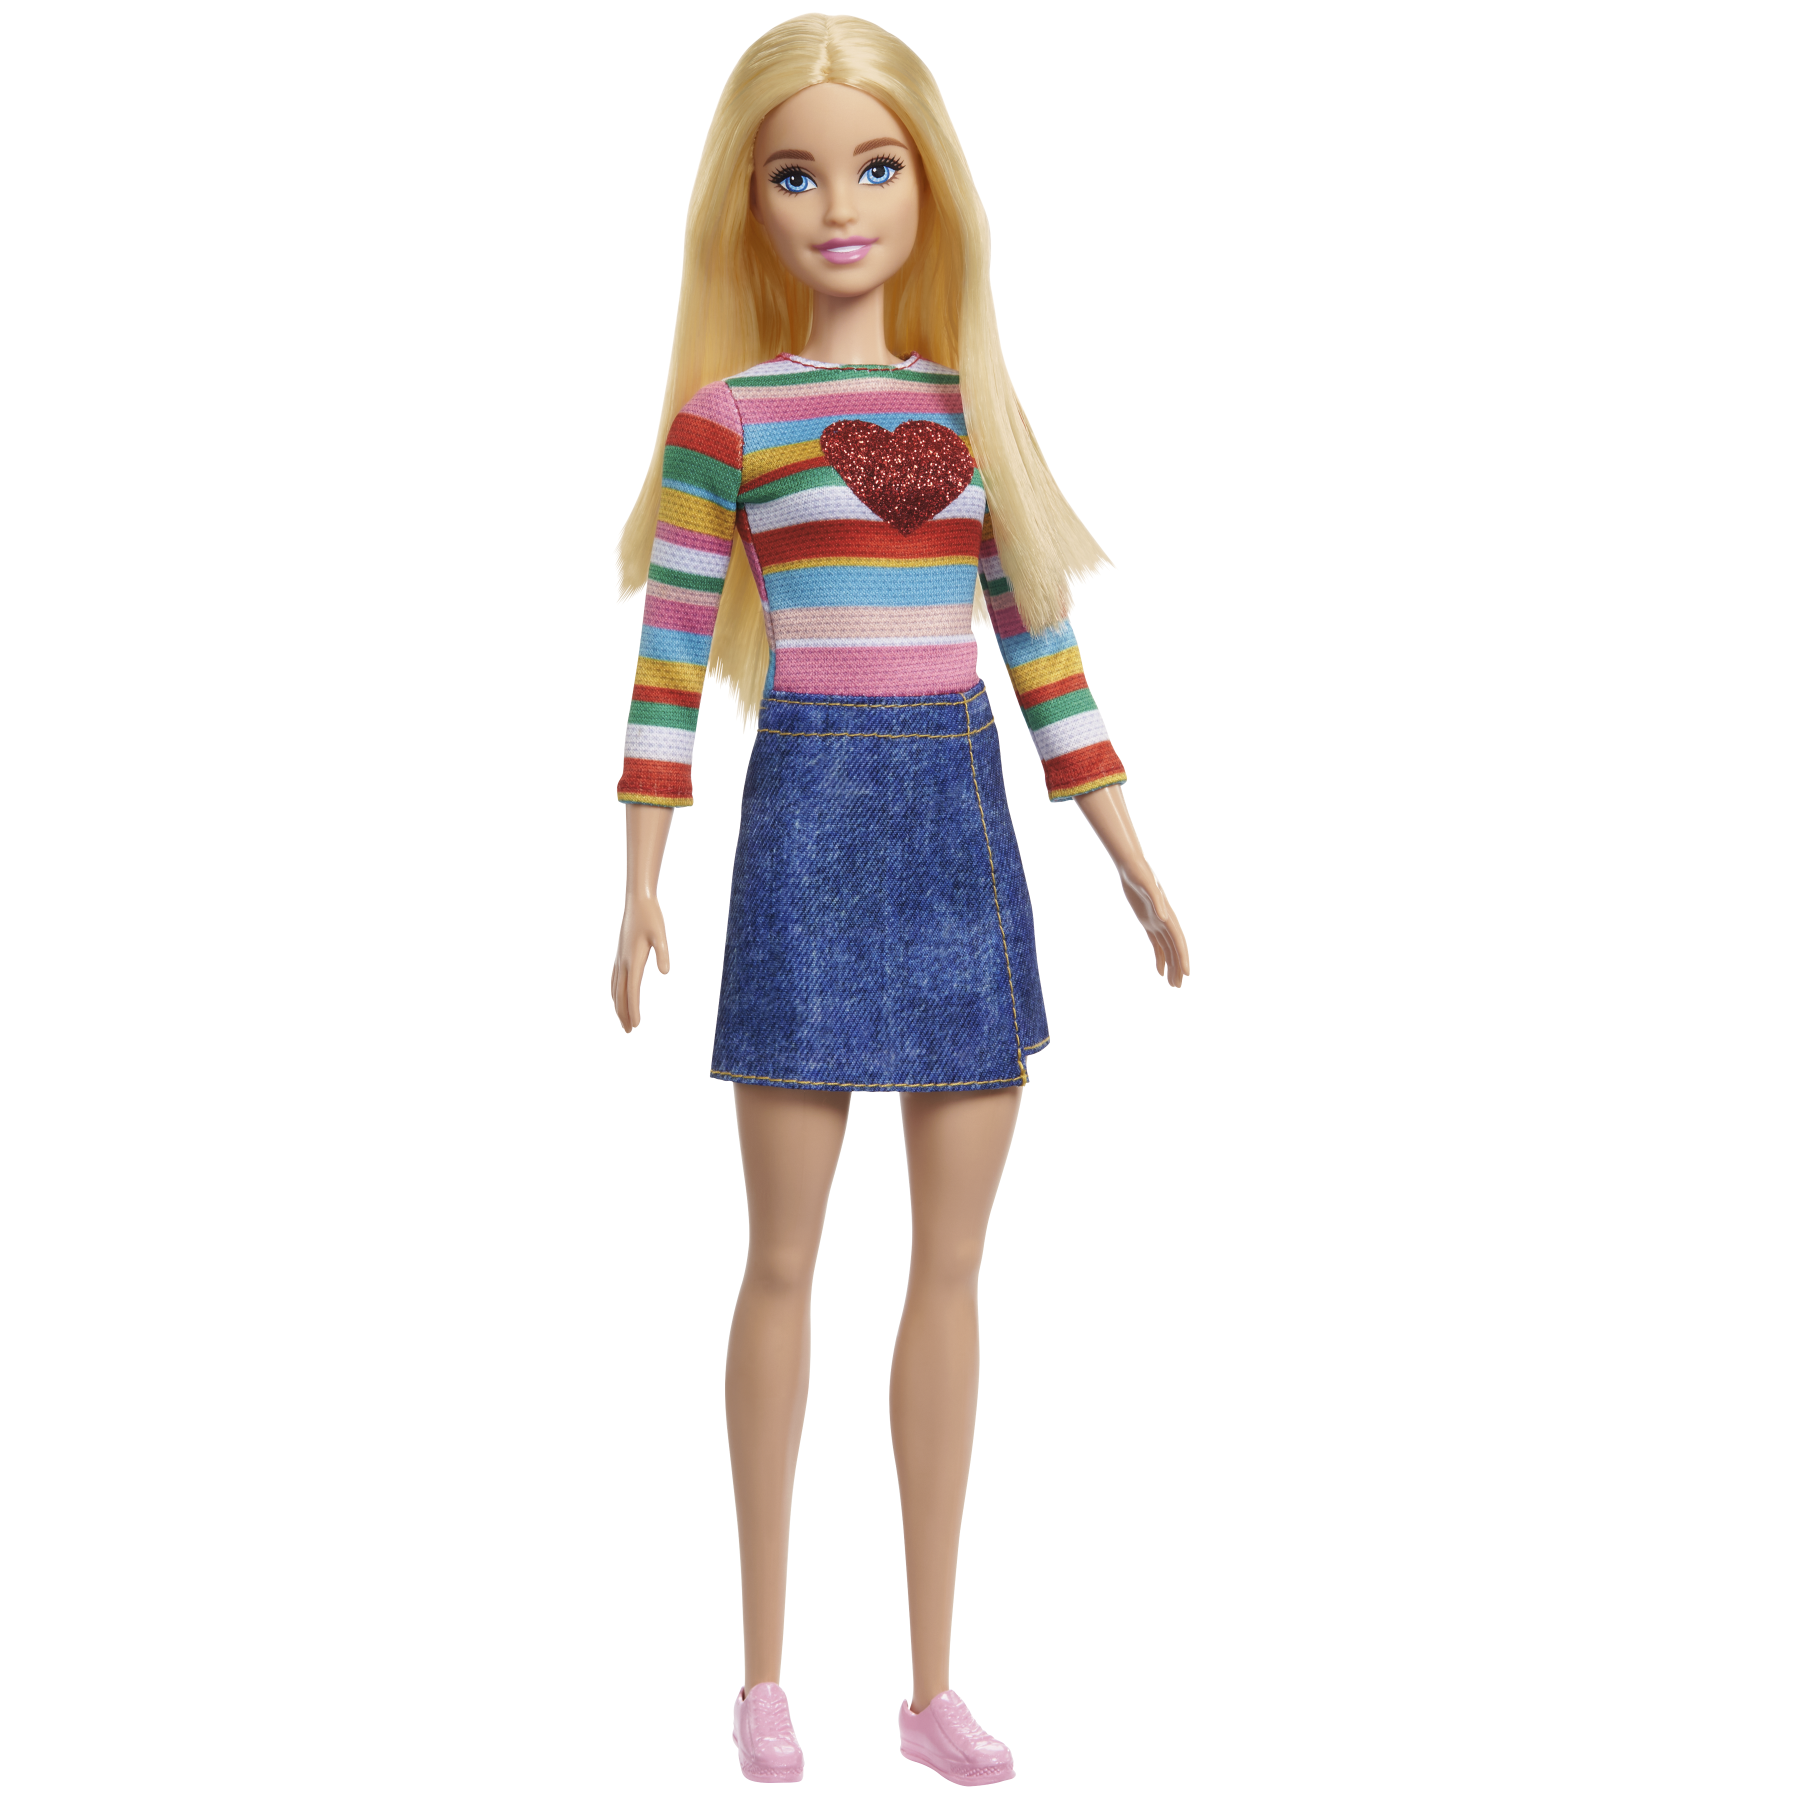 Barbie - uovissimo, include 1 barbie malibu e tanti accessori per essere una pop-star, 1 microfono, 1 bracciale pop-it, stickers glitterati e gadget a sorpresa, giocattolo, 3+ anni, hpx49 - Barbie